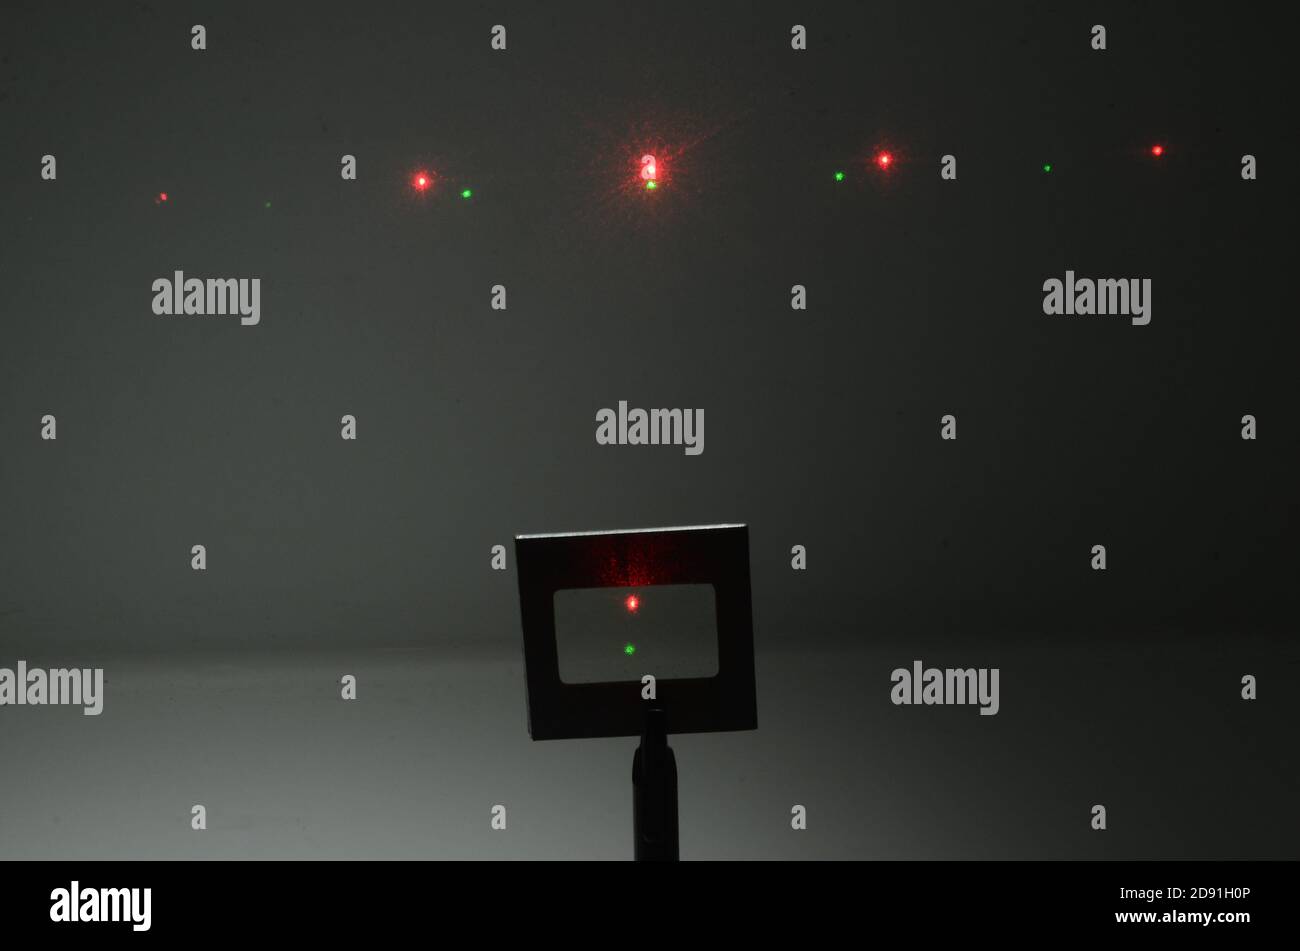 Dans une pièce sombre, deux faisceaux laser provenant d'une source située sous la caméra frappent une grille optique et un motif d'interférence s'ajoute sur le mur à l'arrière Banque D'Images